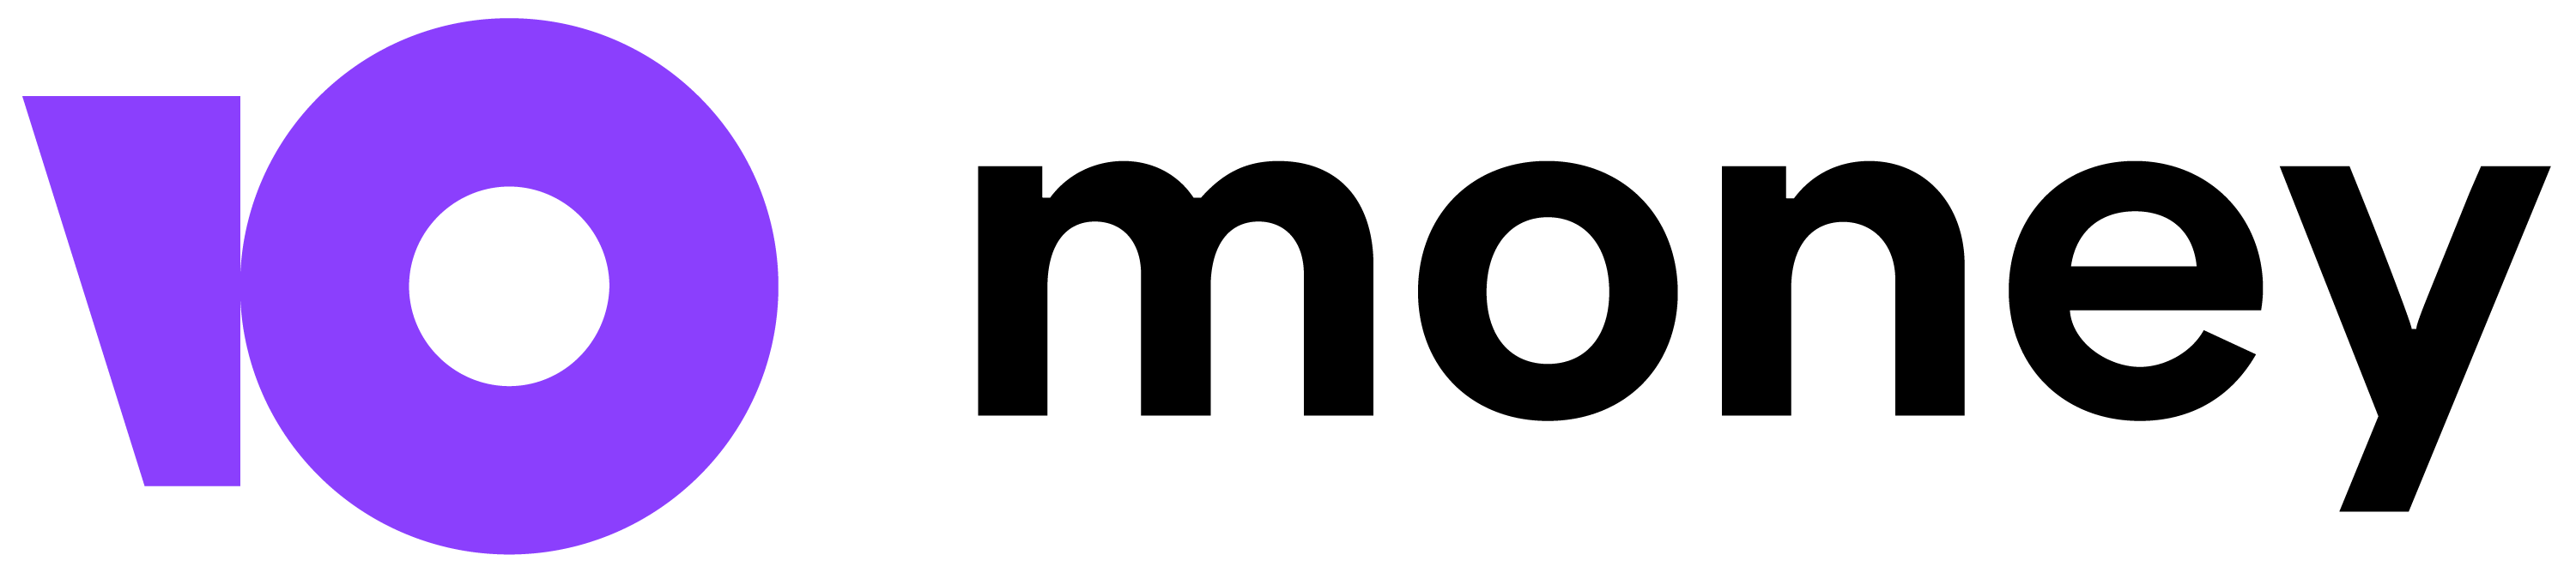 Логотип Юmoney